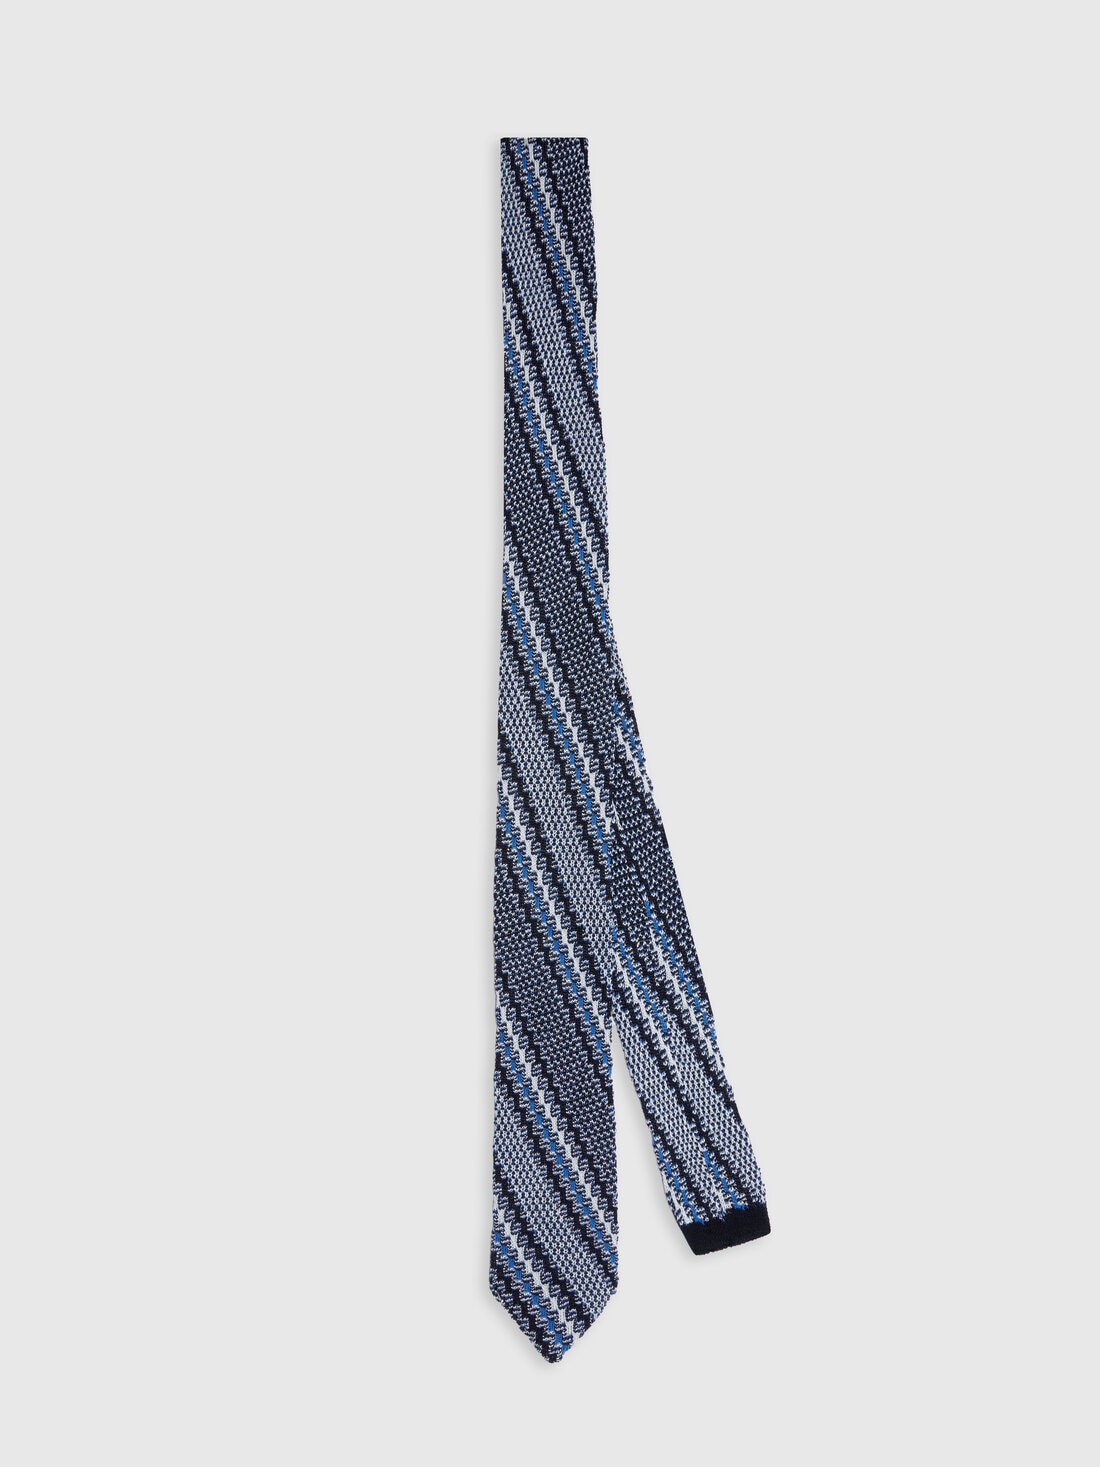 Krawatte aus Baumwolle und Leinen mit Stickereien, Mehrfarbig  - 8053147141879 - 0